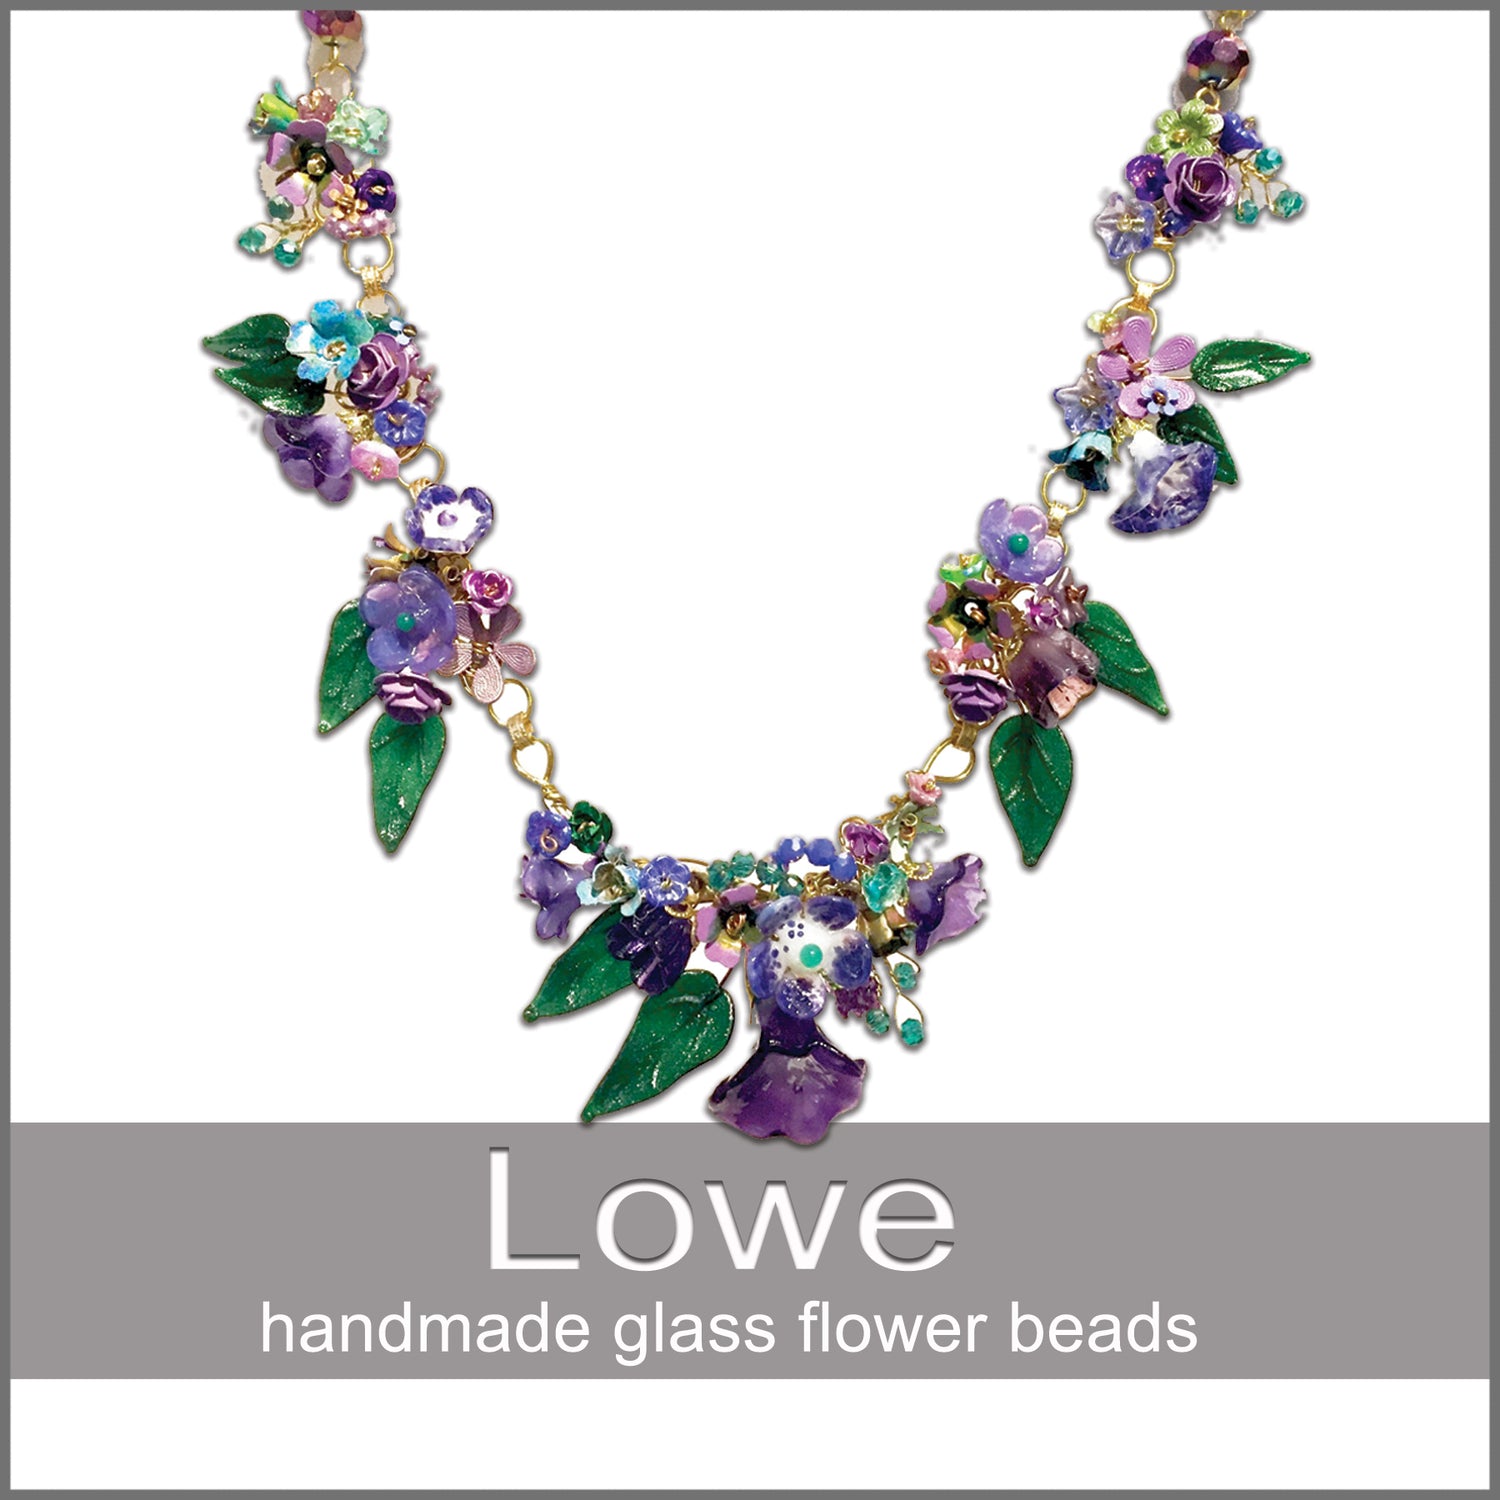 Jewelry - Mary Lowe